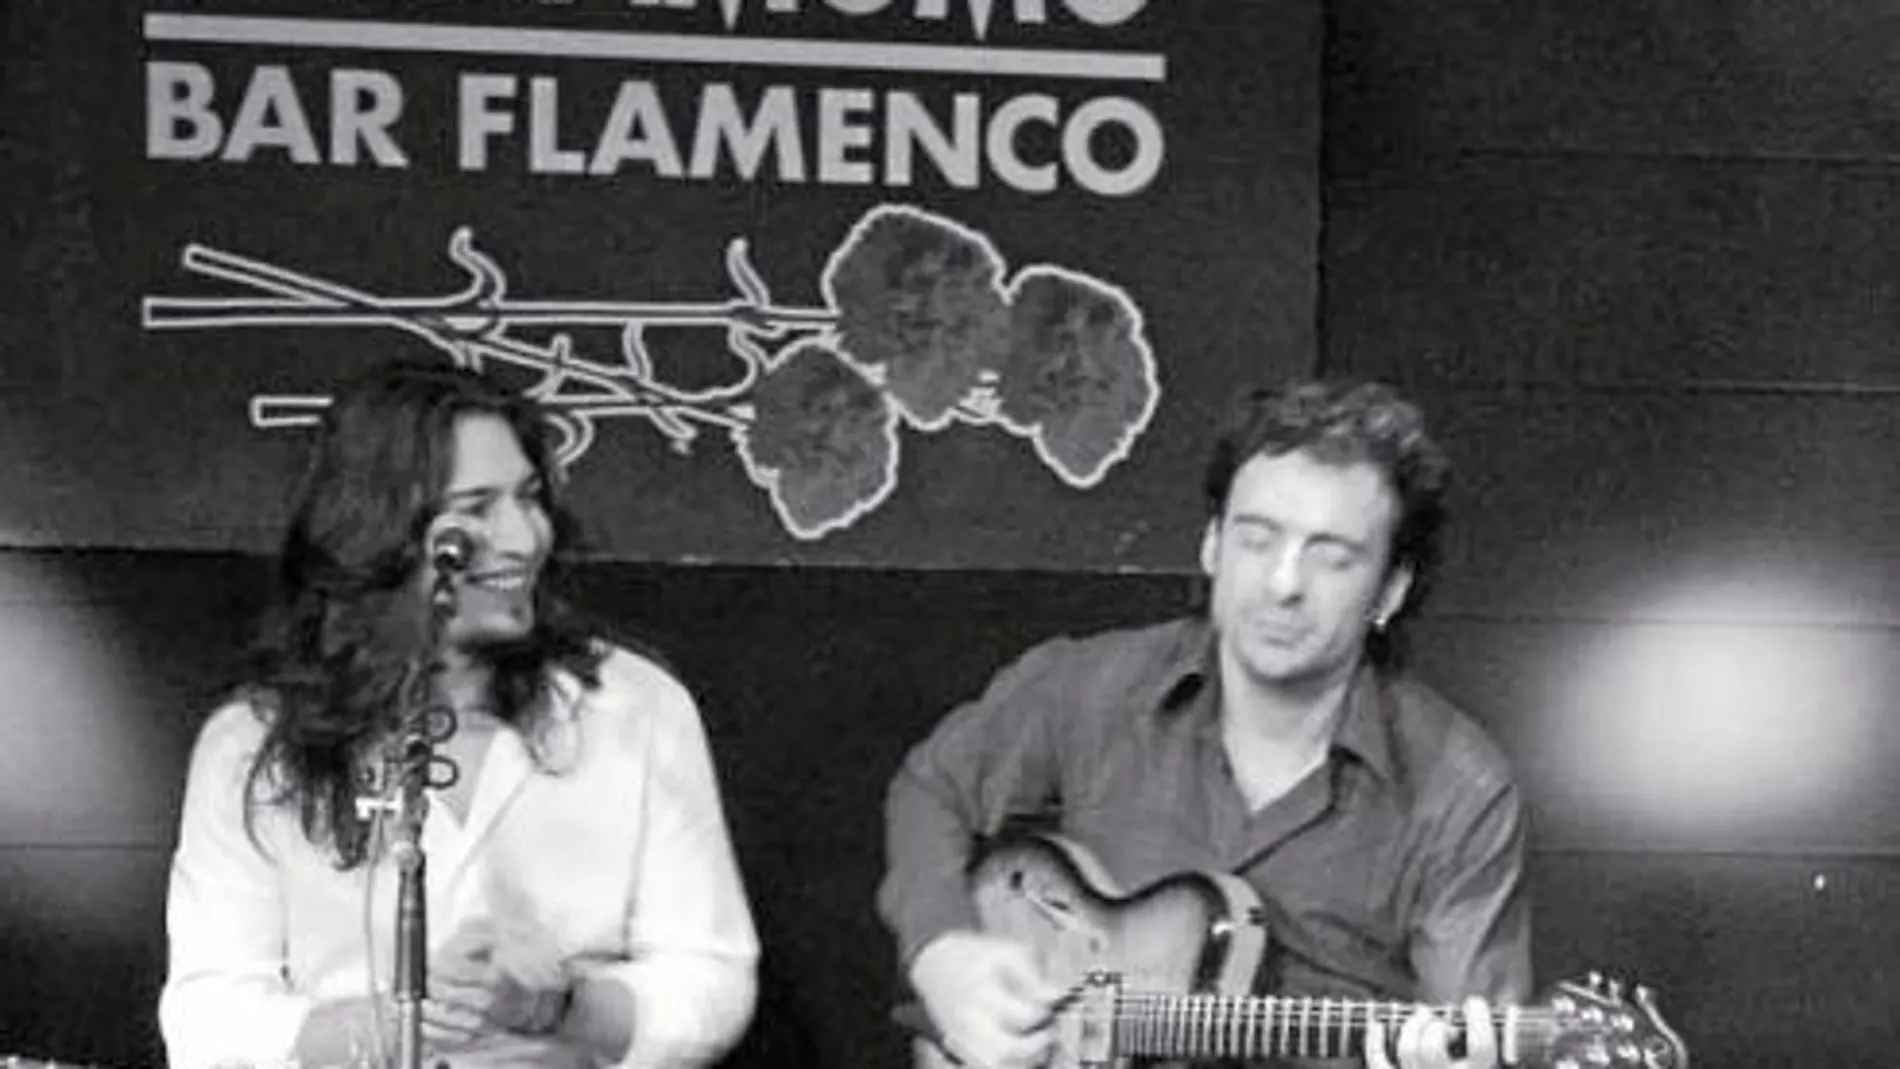 Sangre raza y flamenco